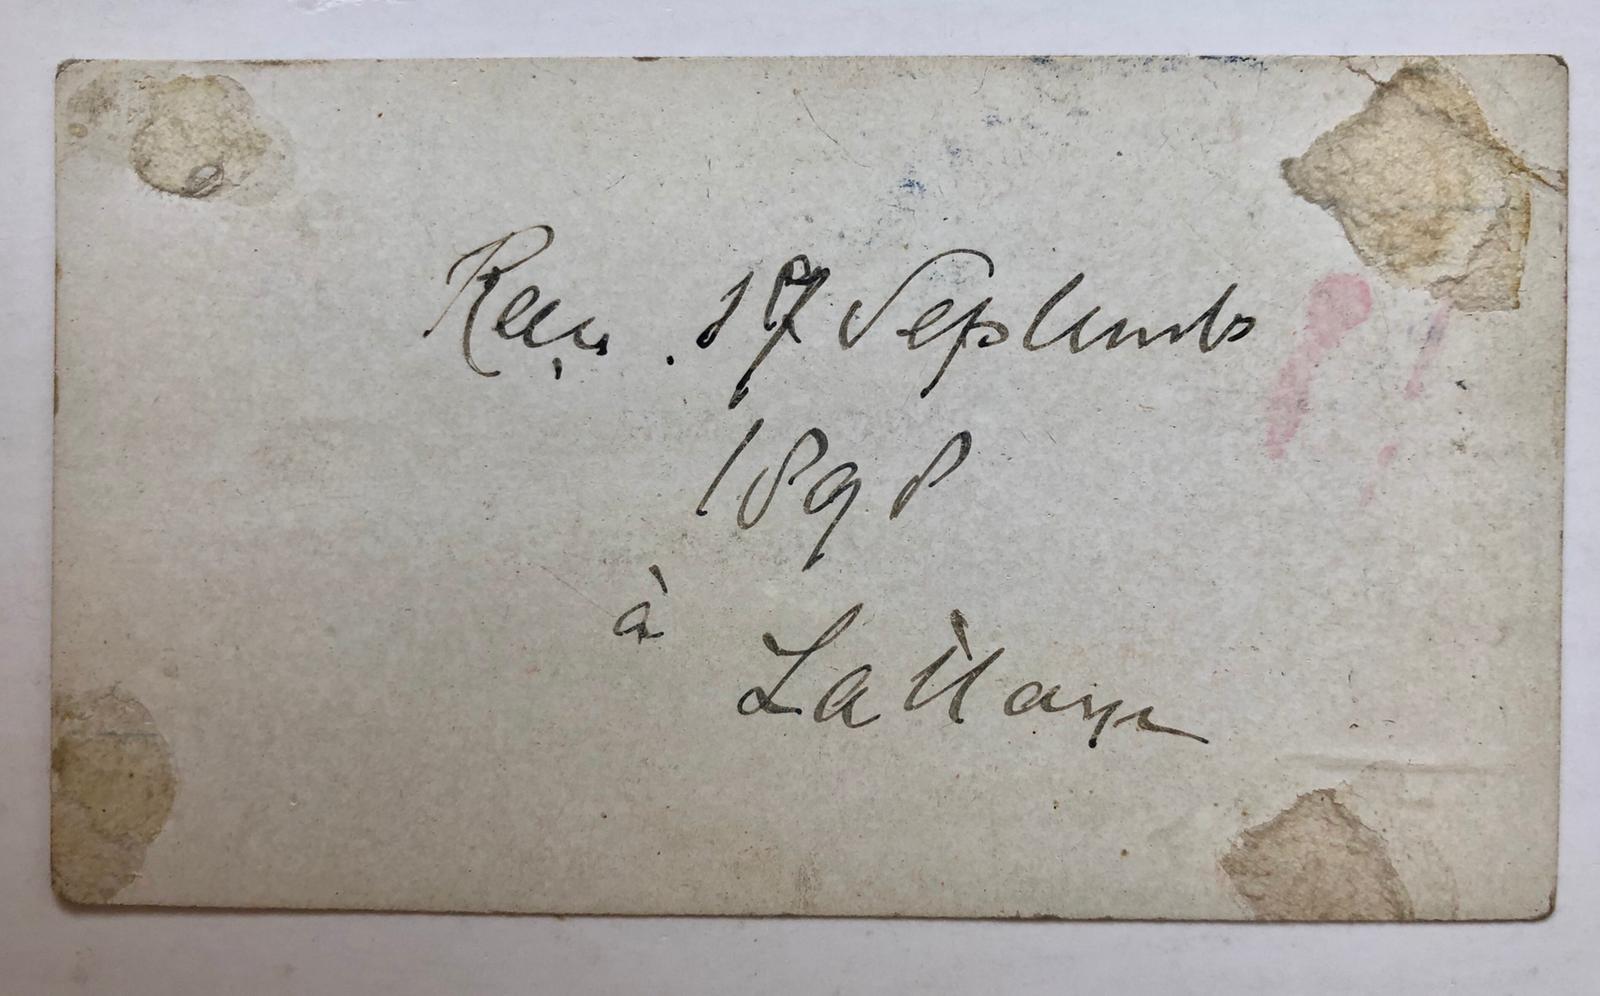  - [Carte visite, SAKSEN] Visitekaartje van le Grand duc de Saxe met achterop in pen recu 17-9-1898  La Haye.